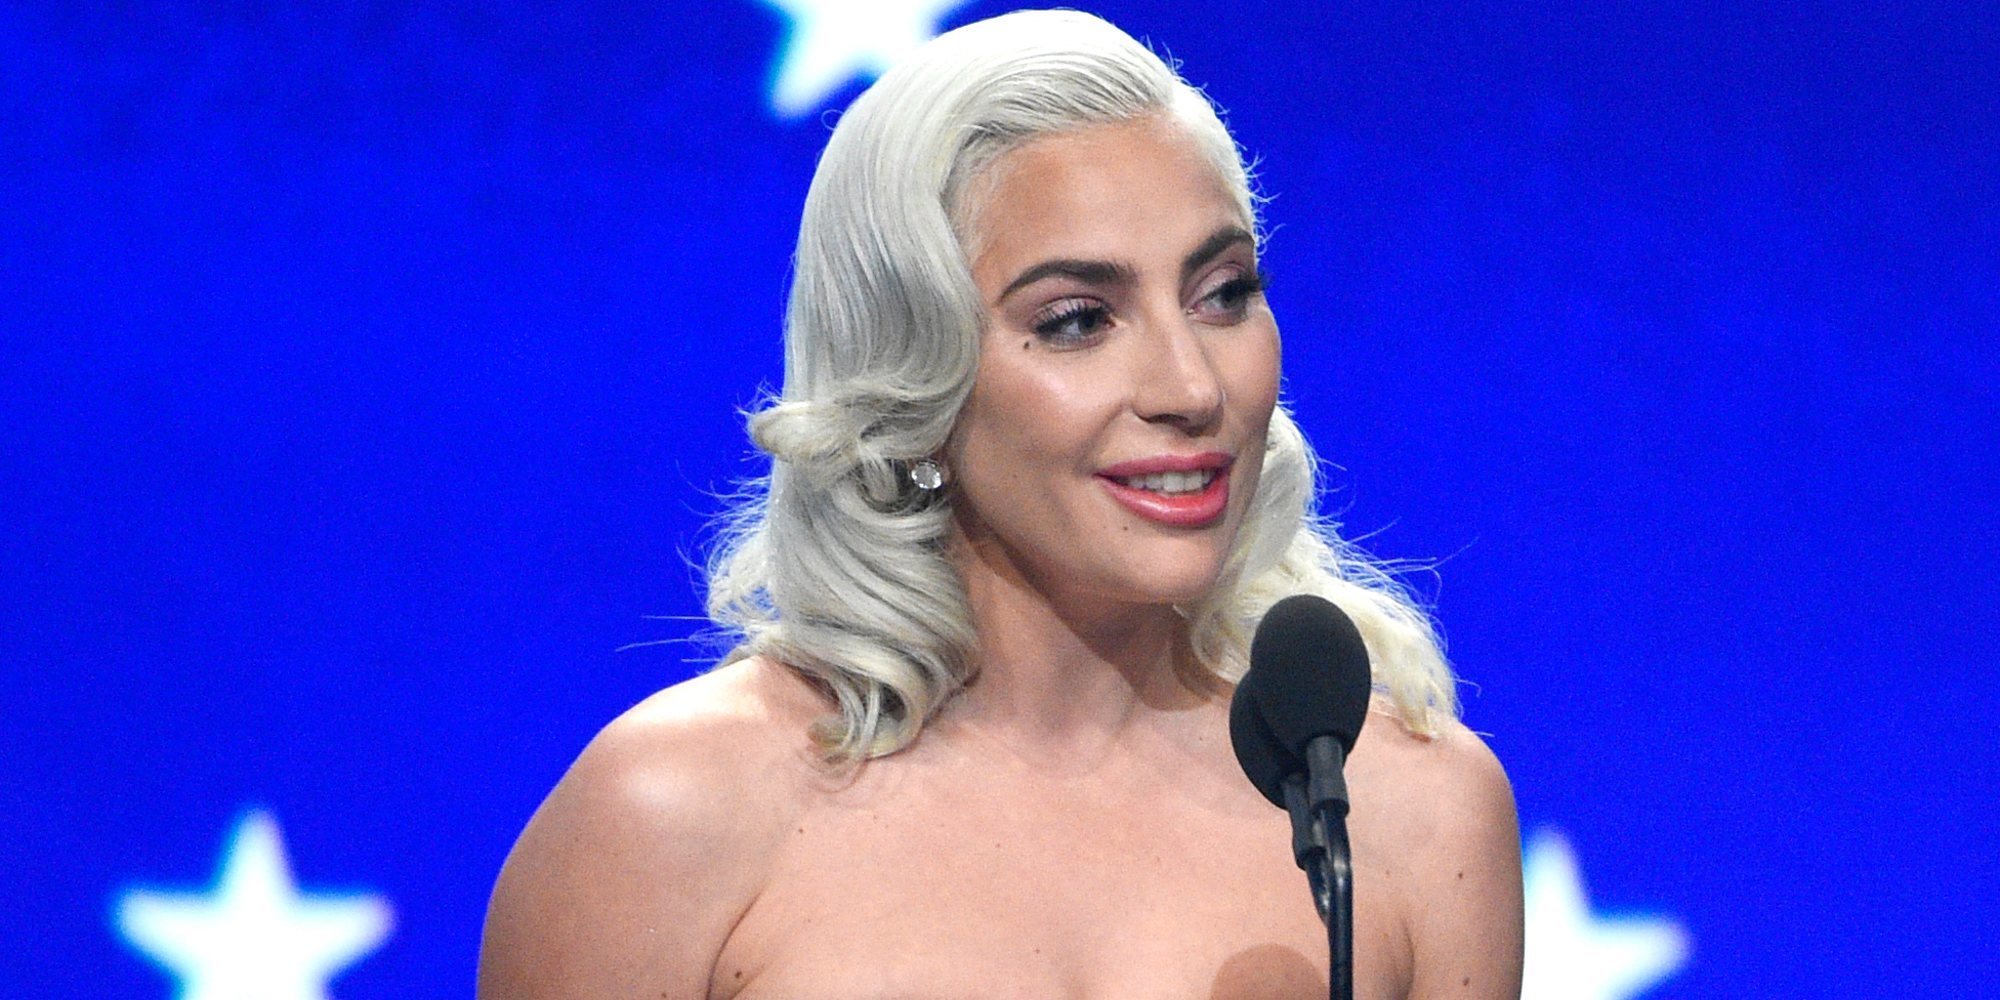 La gran noche de Lady Gaga en los Critics' Choice Awards 2019: premiada por su interpretación y su música